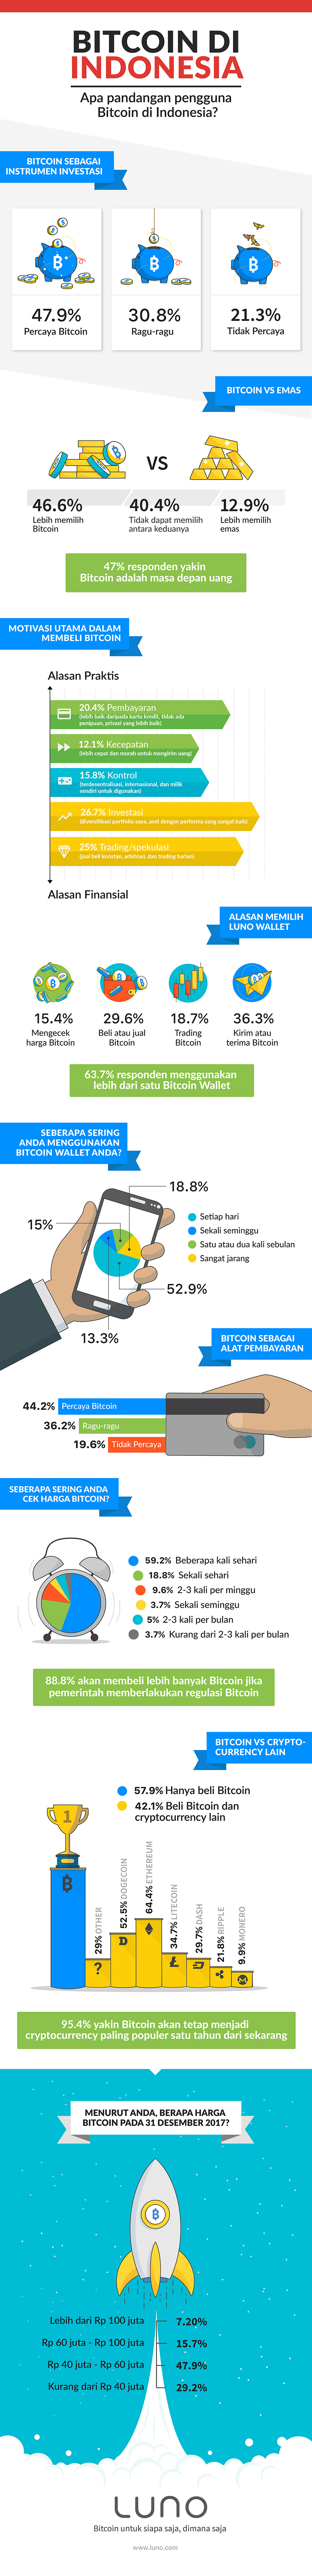 Penggunaan-Bitcoin-di-Indonesia